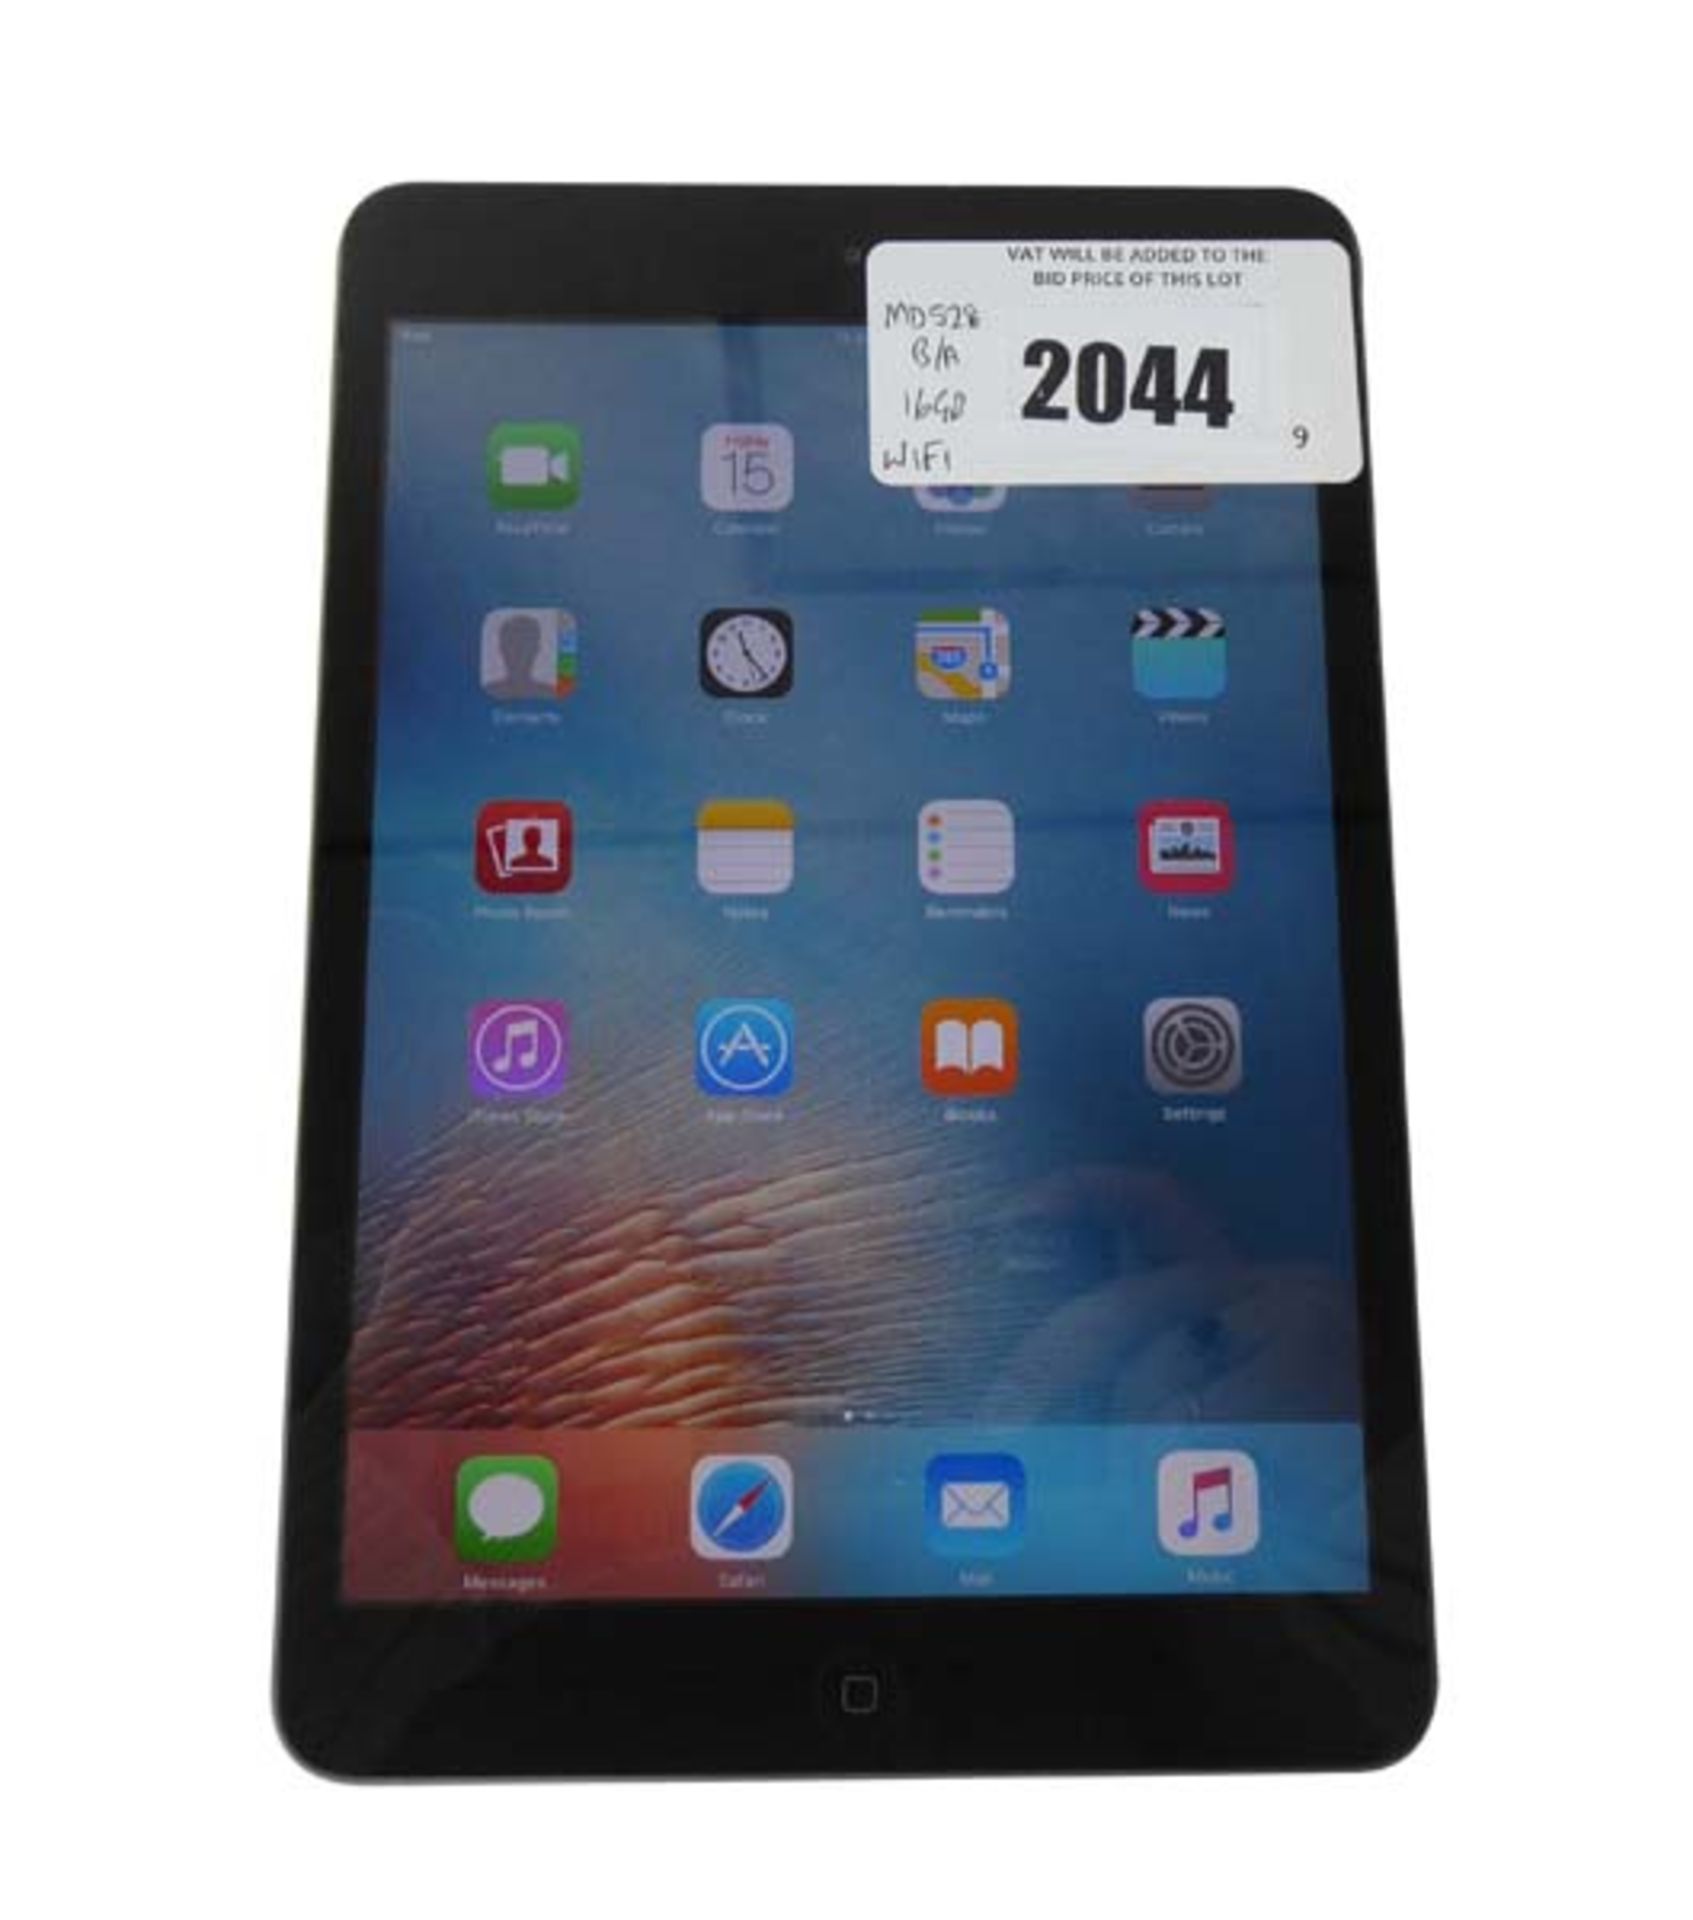 iPad Mini 16GB Black tablet (A1432)